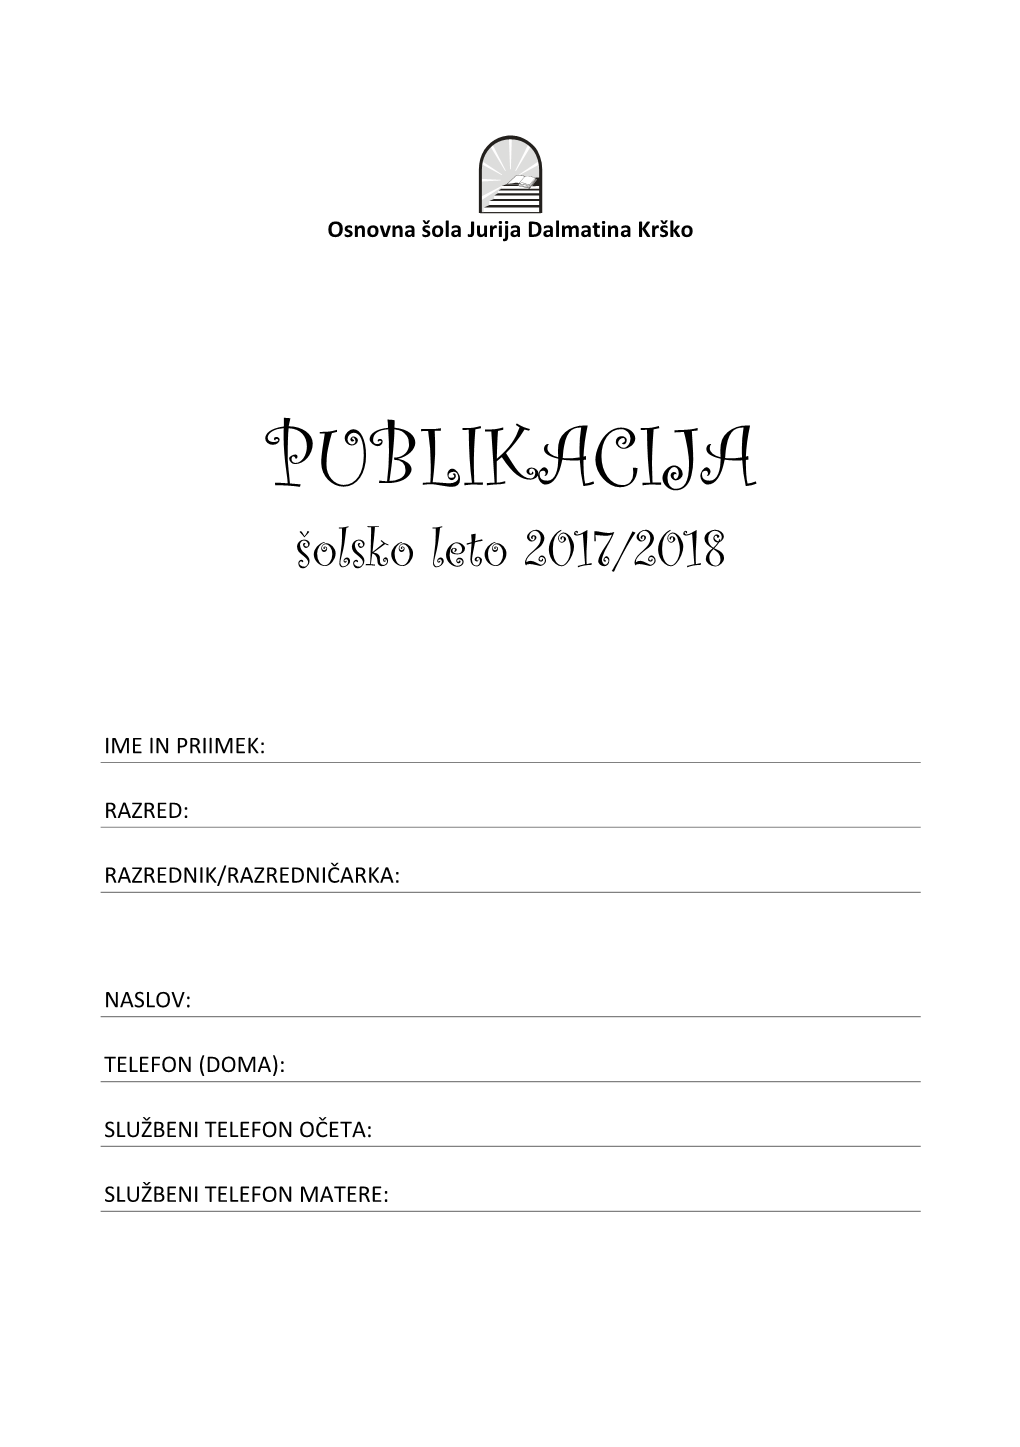 Publikacija 2017/2018.Pdf